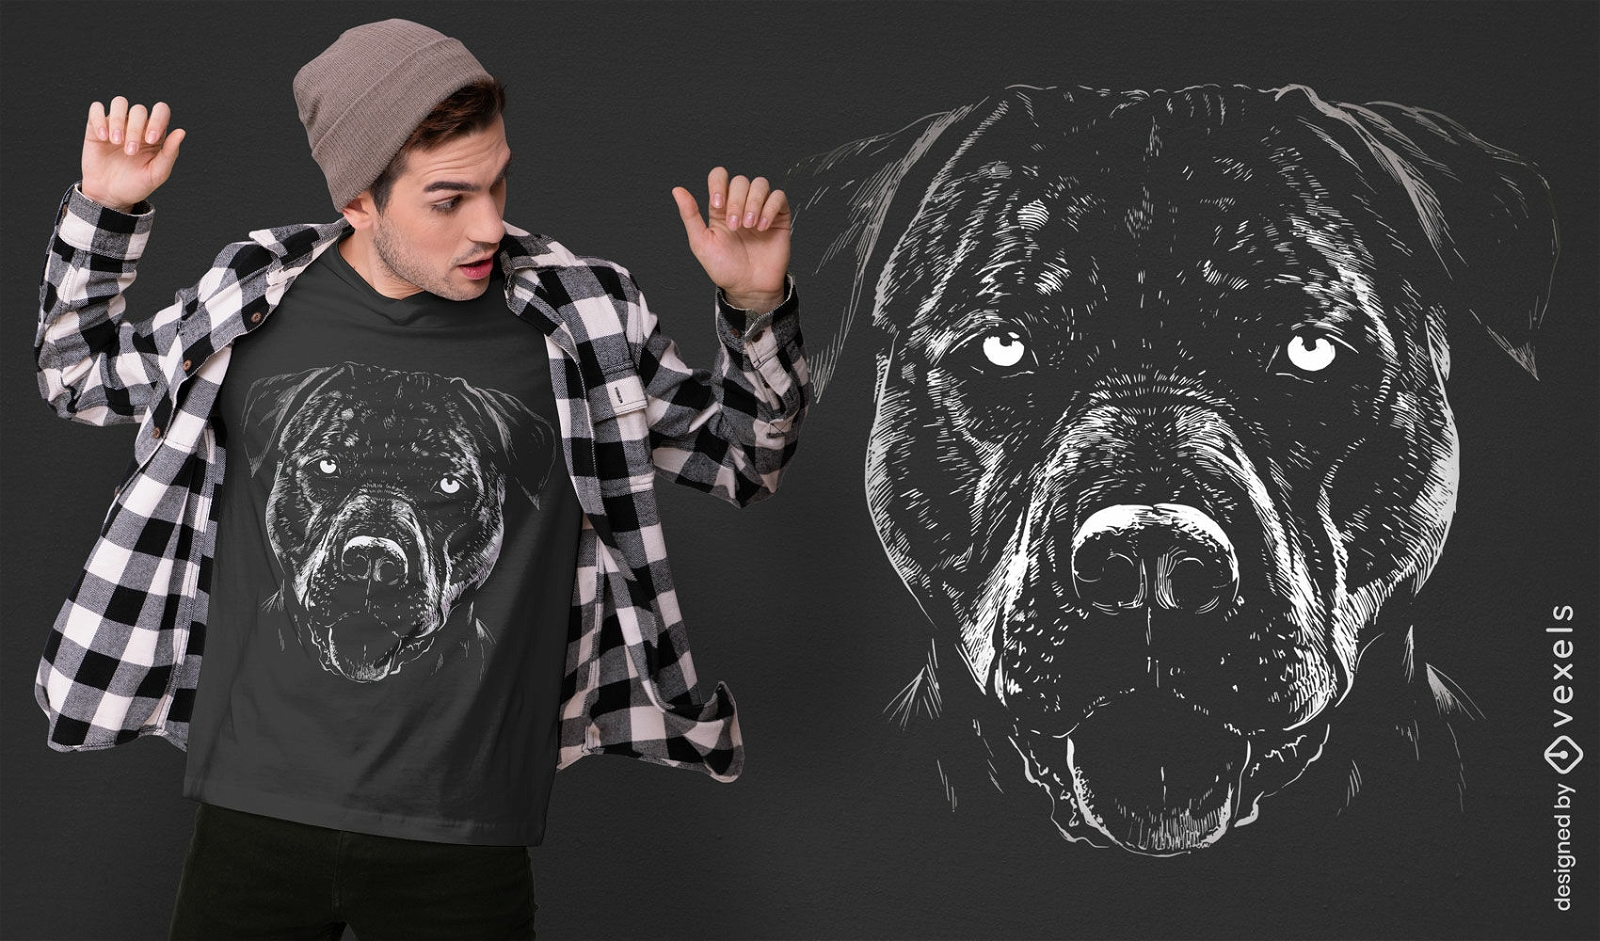 Diseño detallado de camiseta de perro pitbull